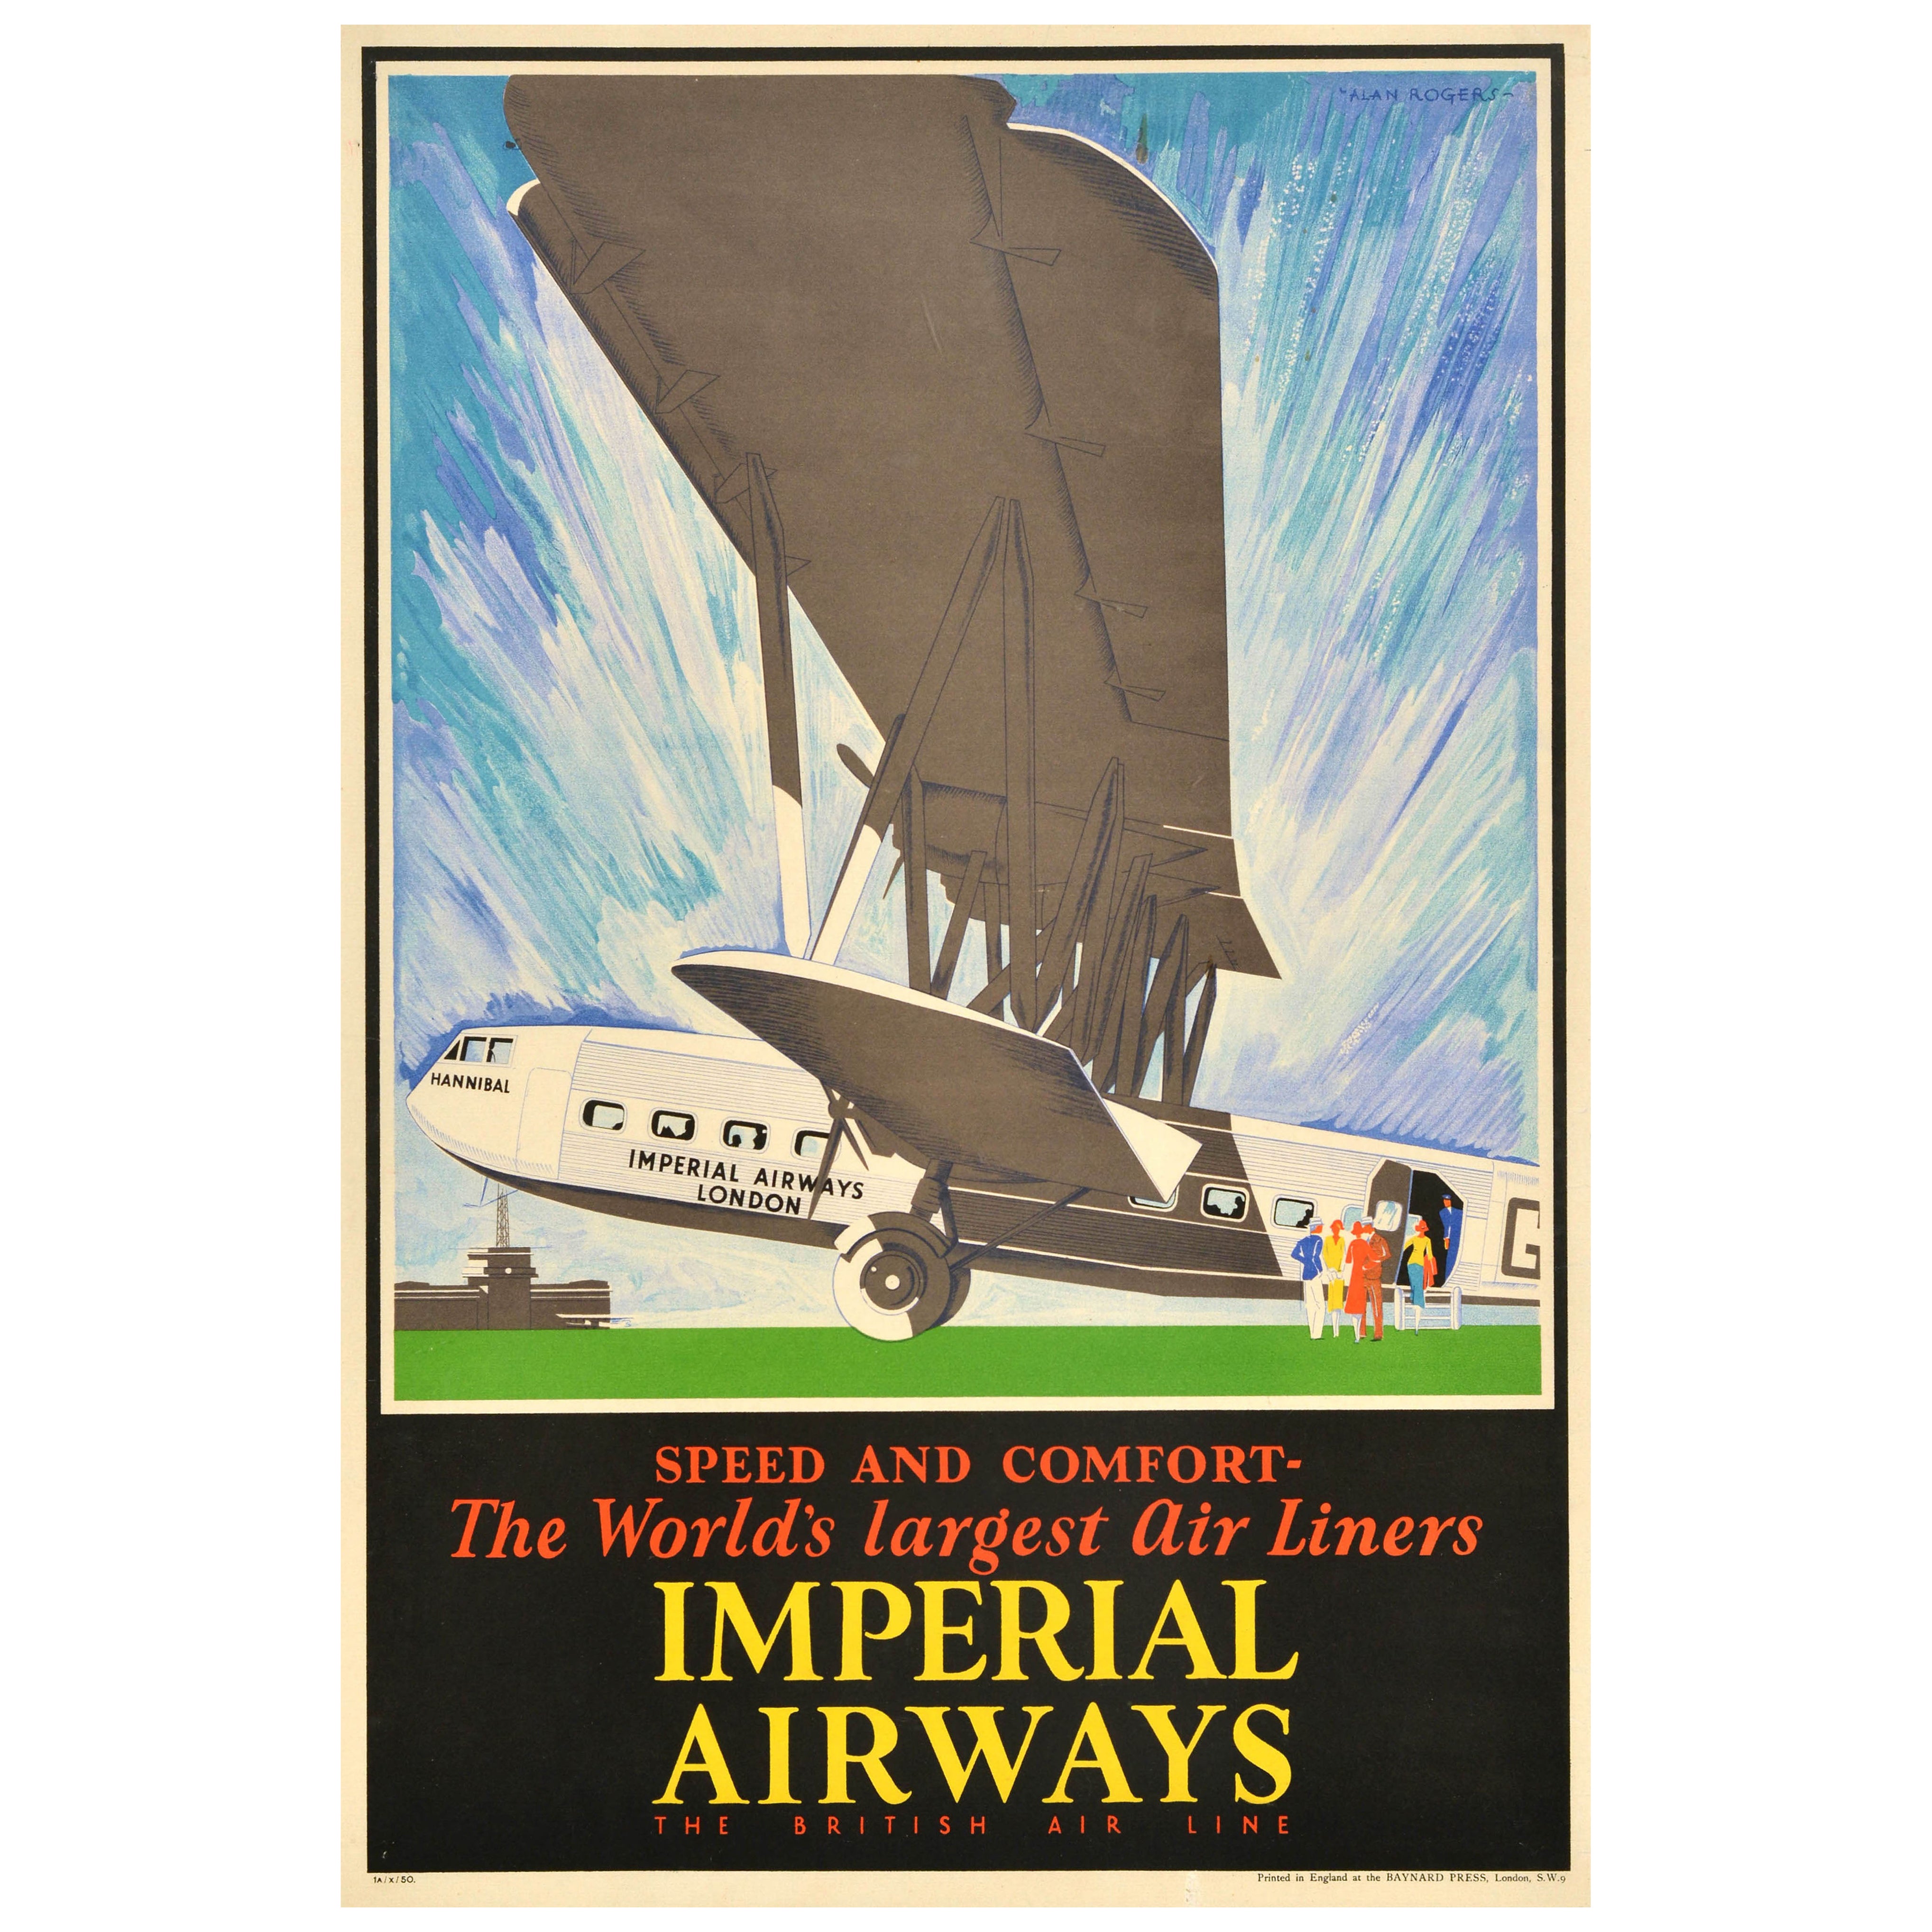 Original-Vintage-Reise-Werbeplakat Imperial Airways, Großst Air Liners